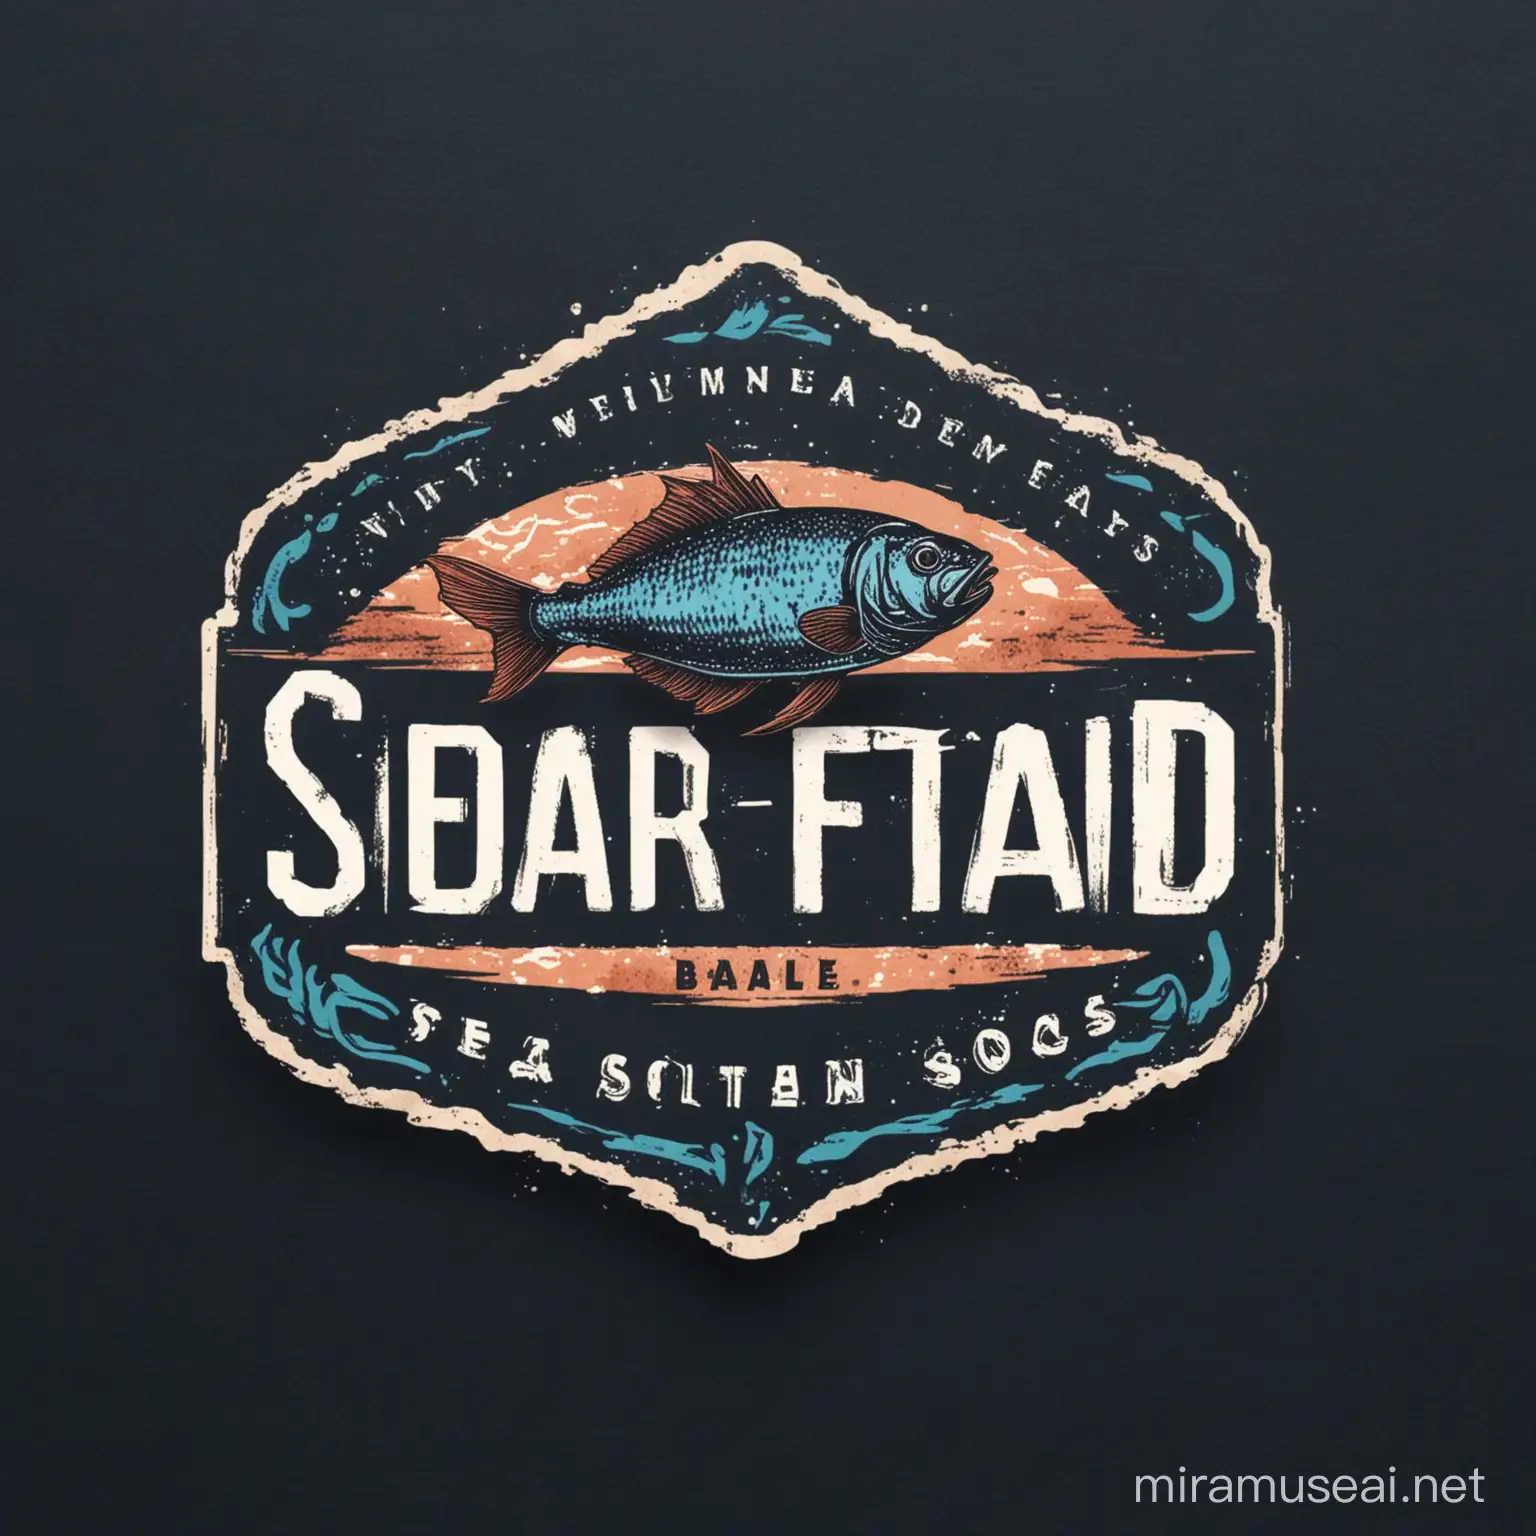 卖海鲜干货的网店logo